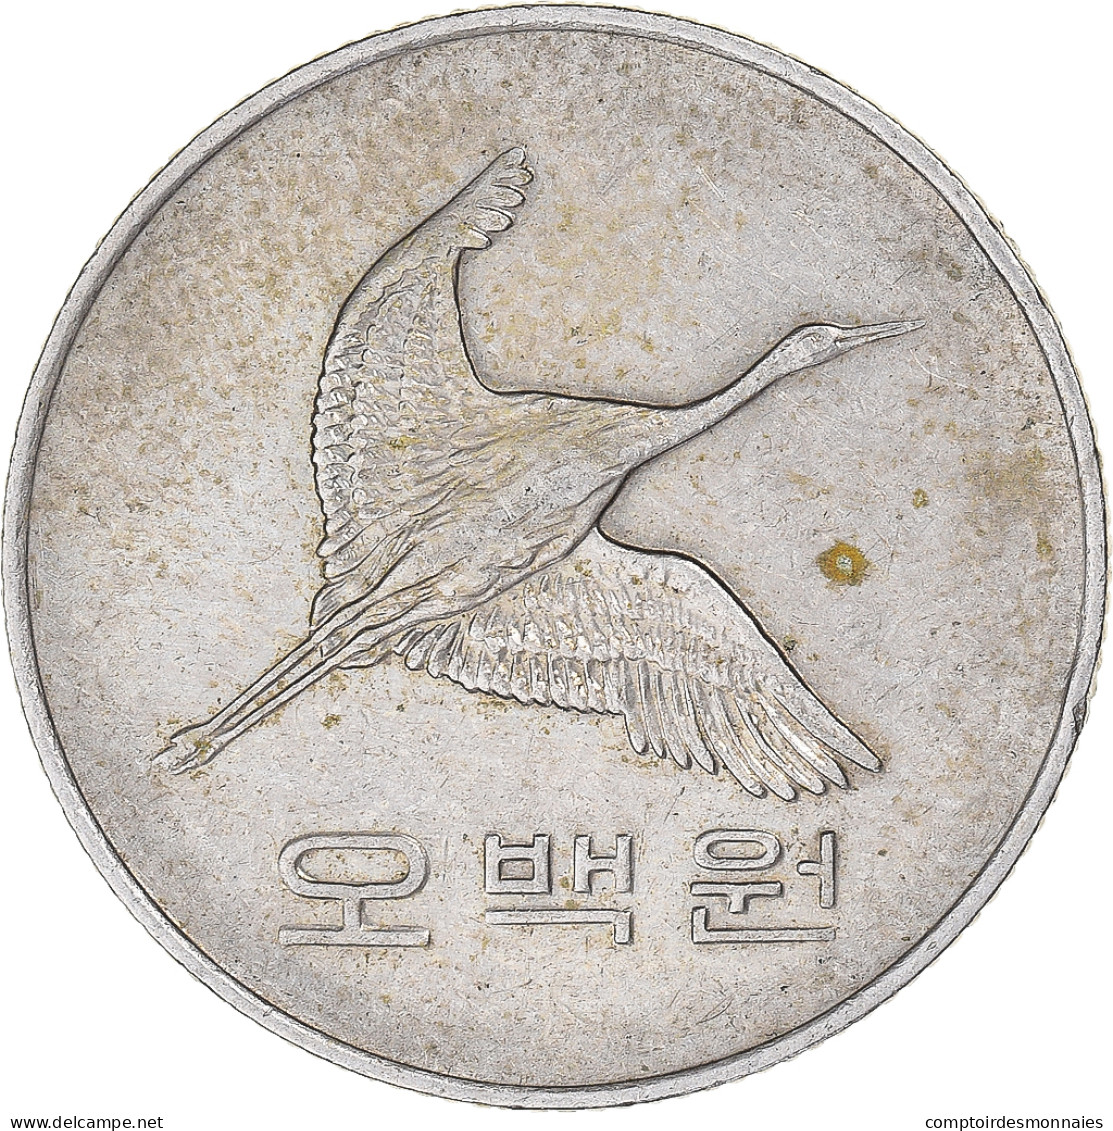 Monnaie, Corée, 500 Won, 1984 - Corée Du Sud